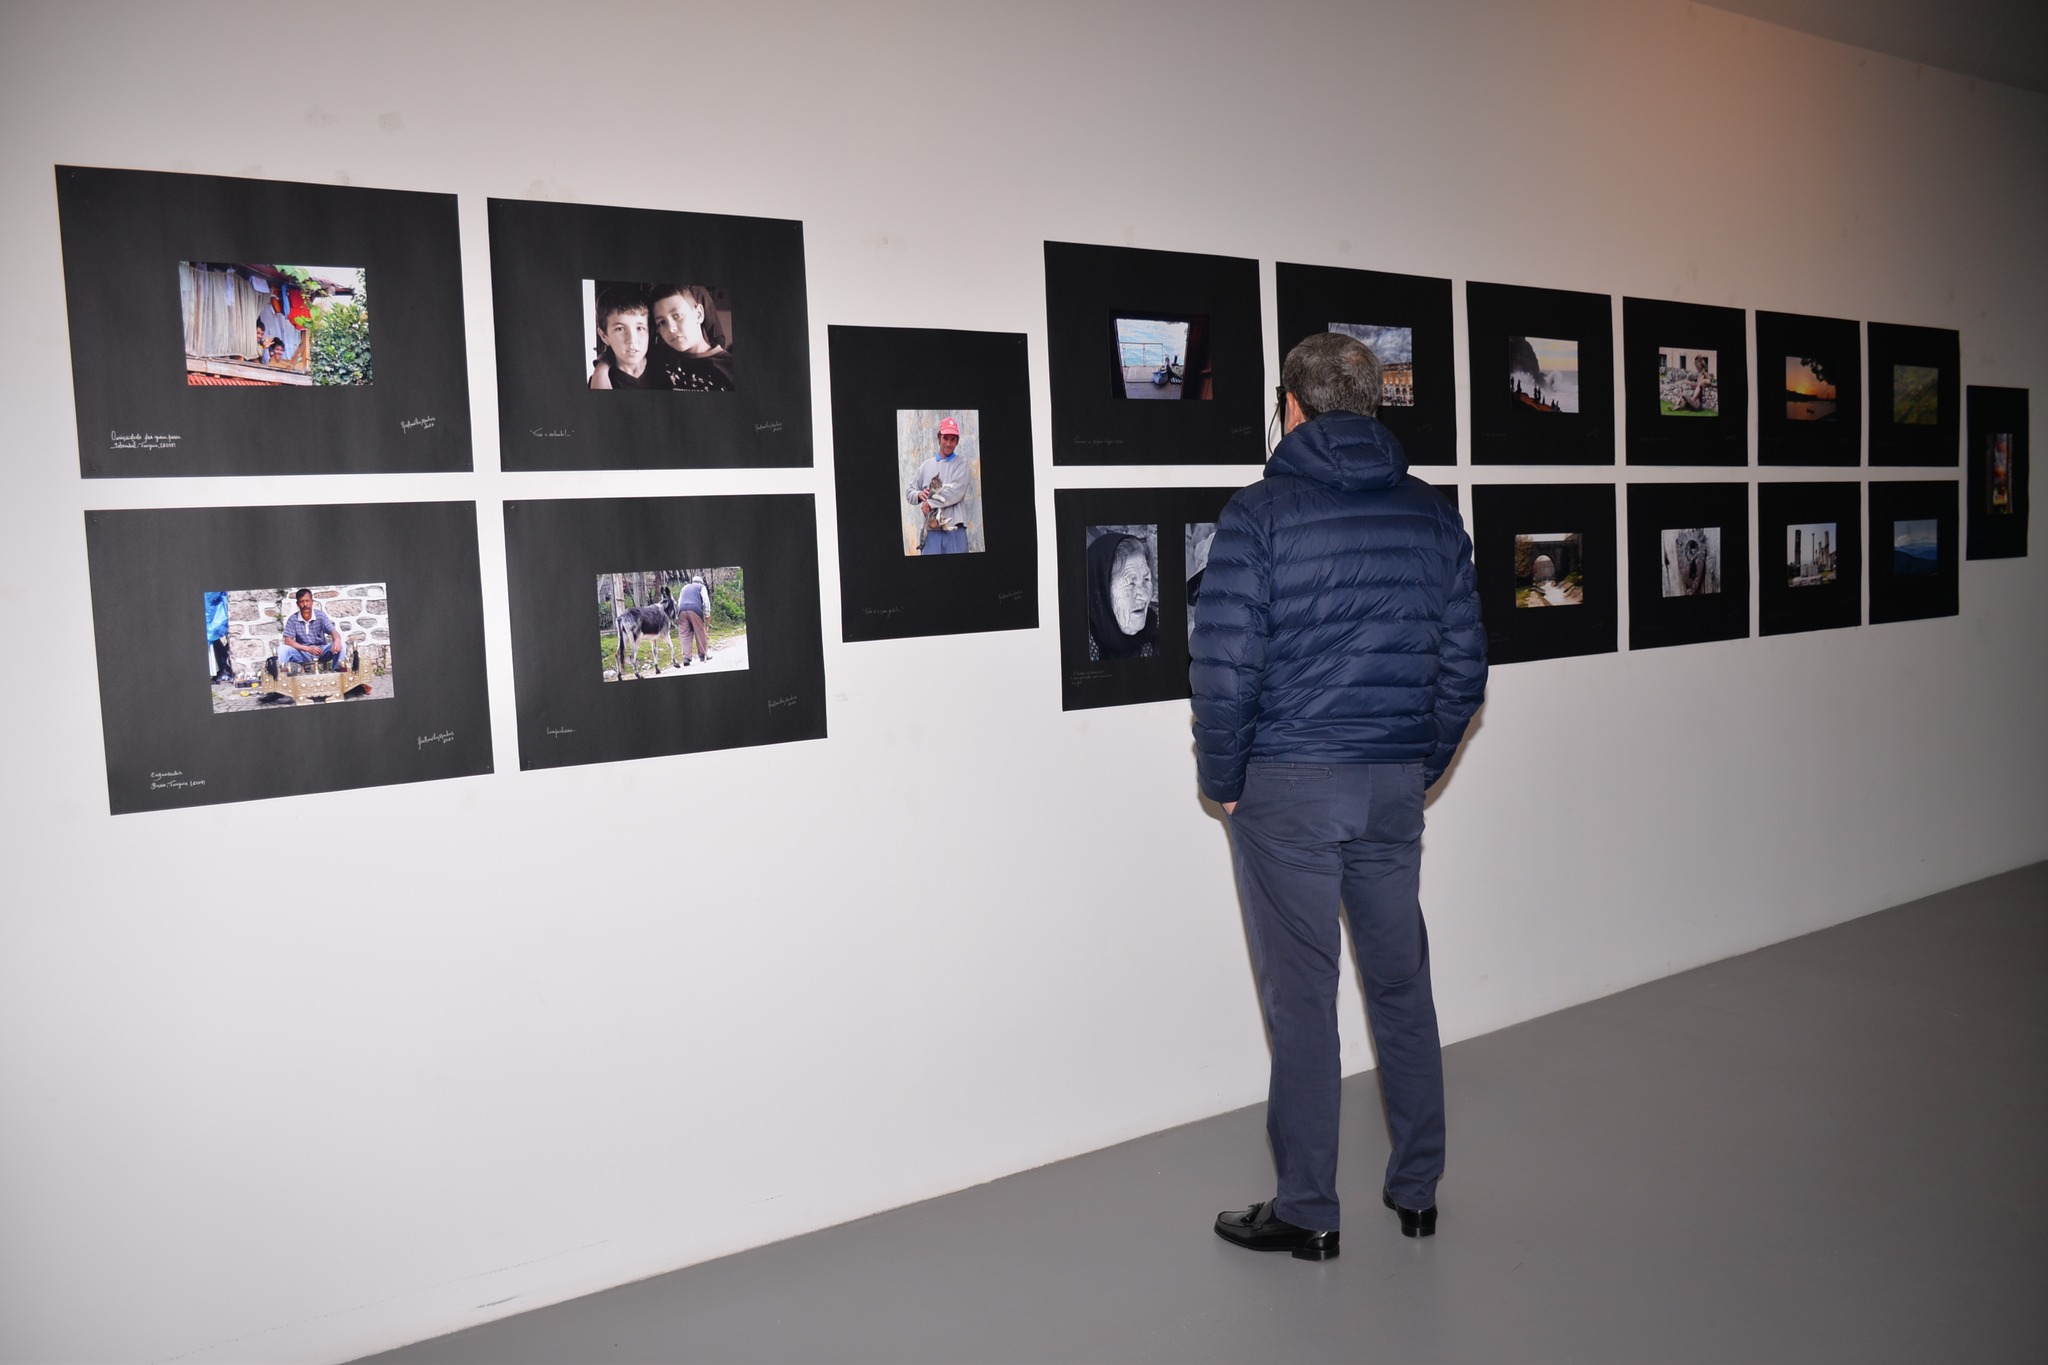 Exposição Fotográfica “Percepções” inaugurada em Ponte de Sor